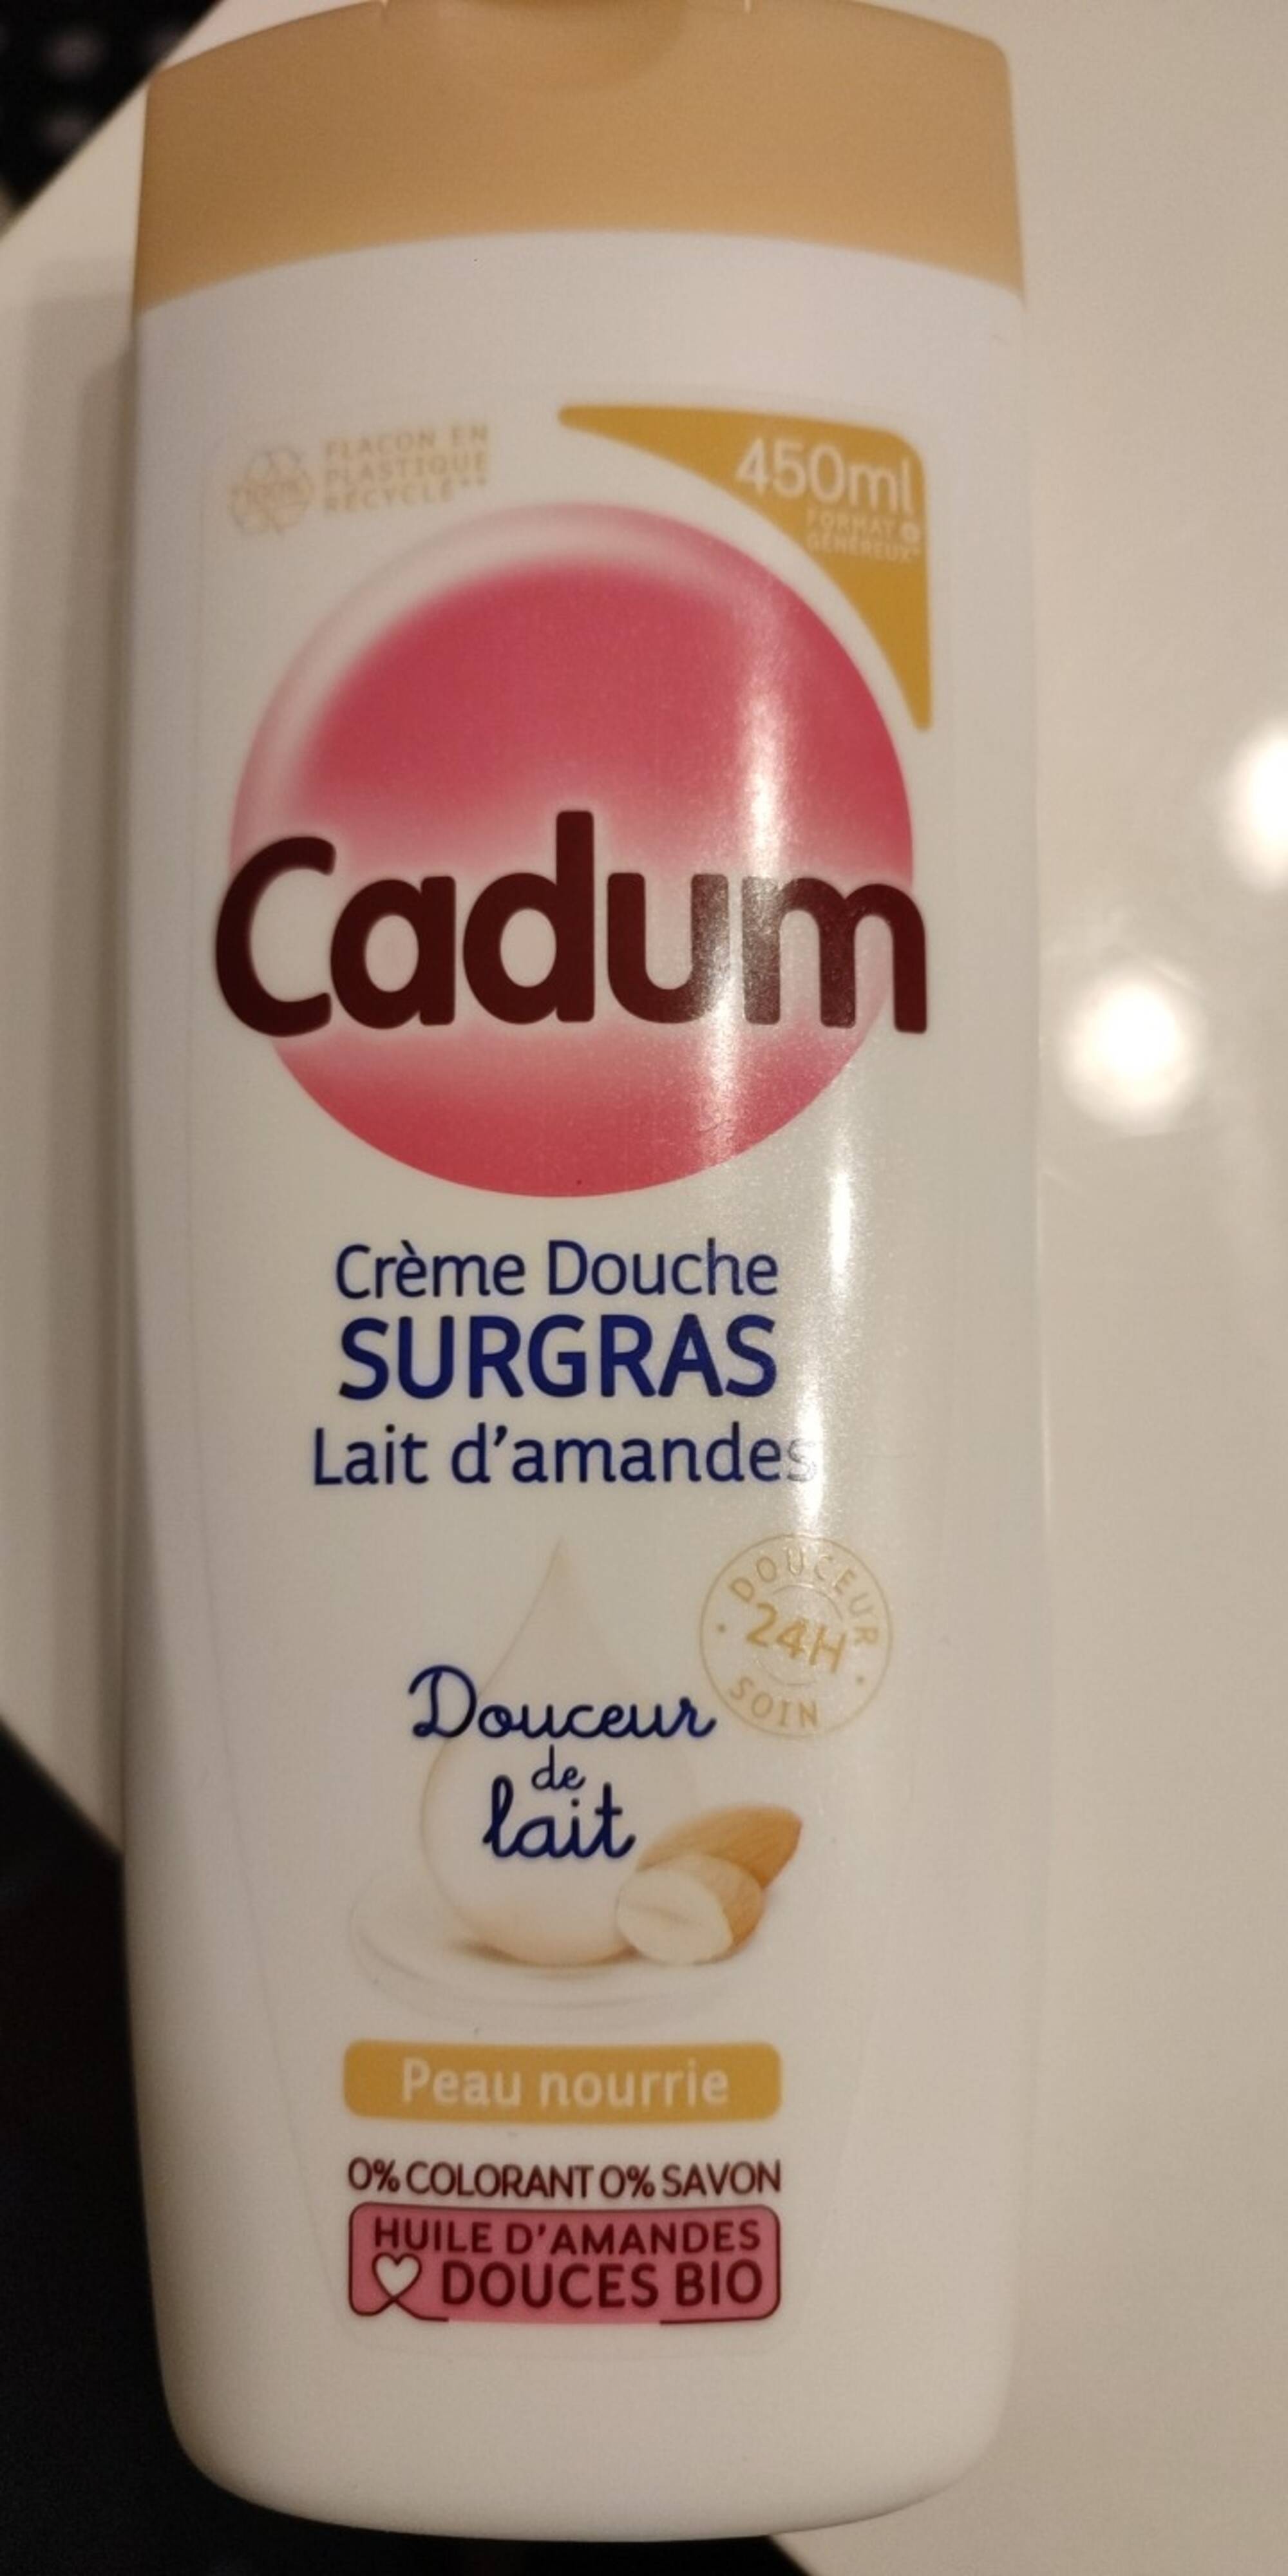 CADUM - Creme douche surgras lait d' amandes